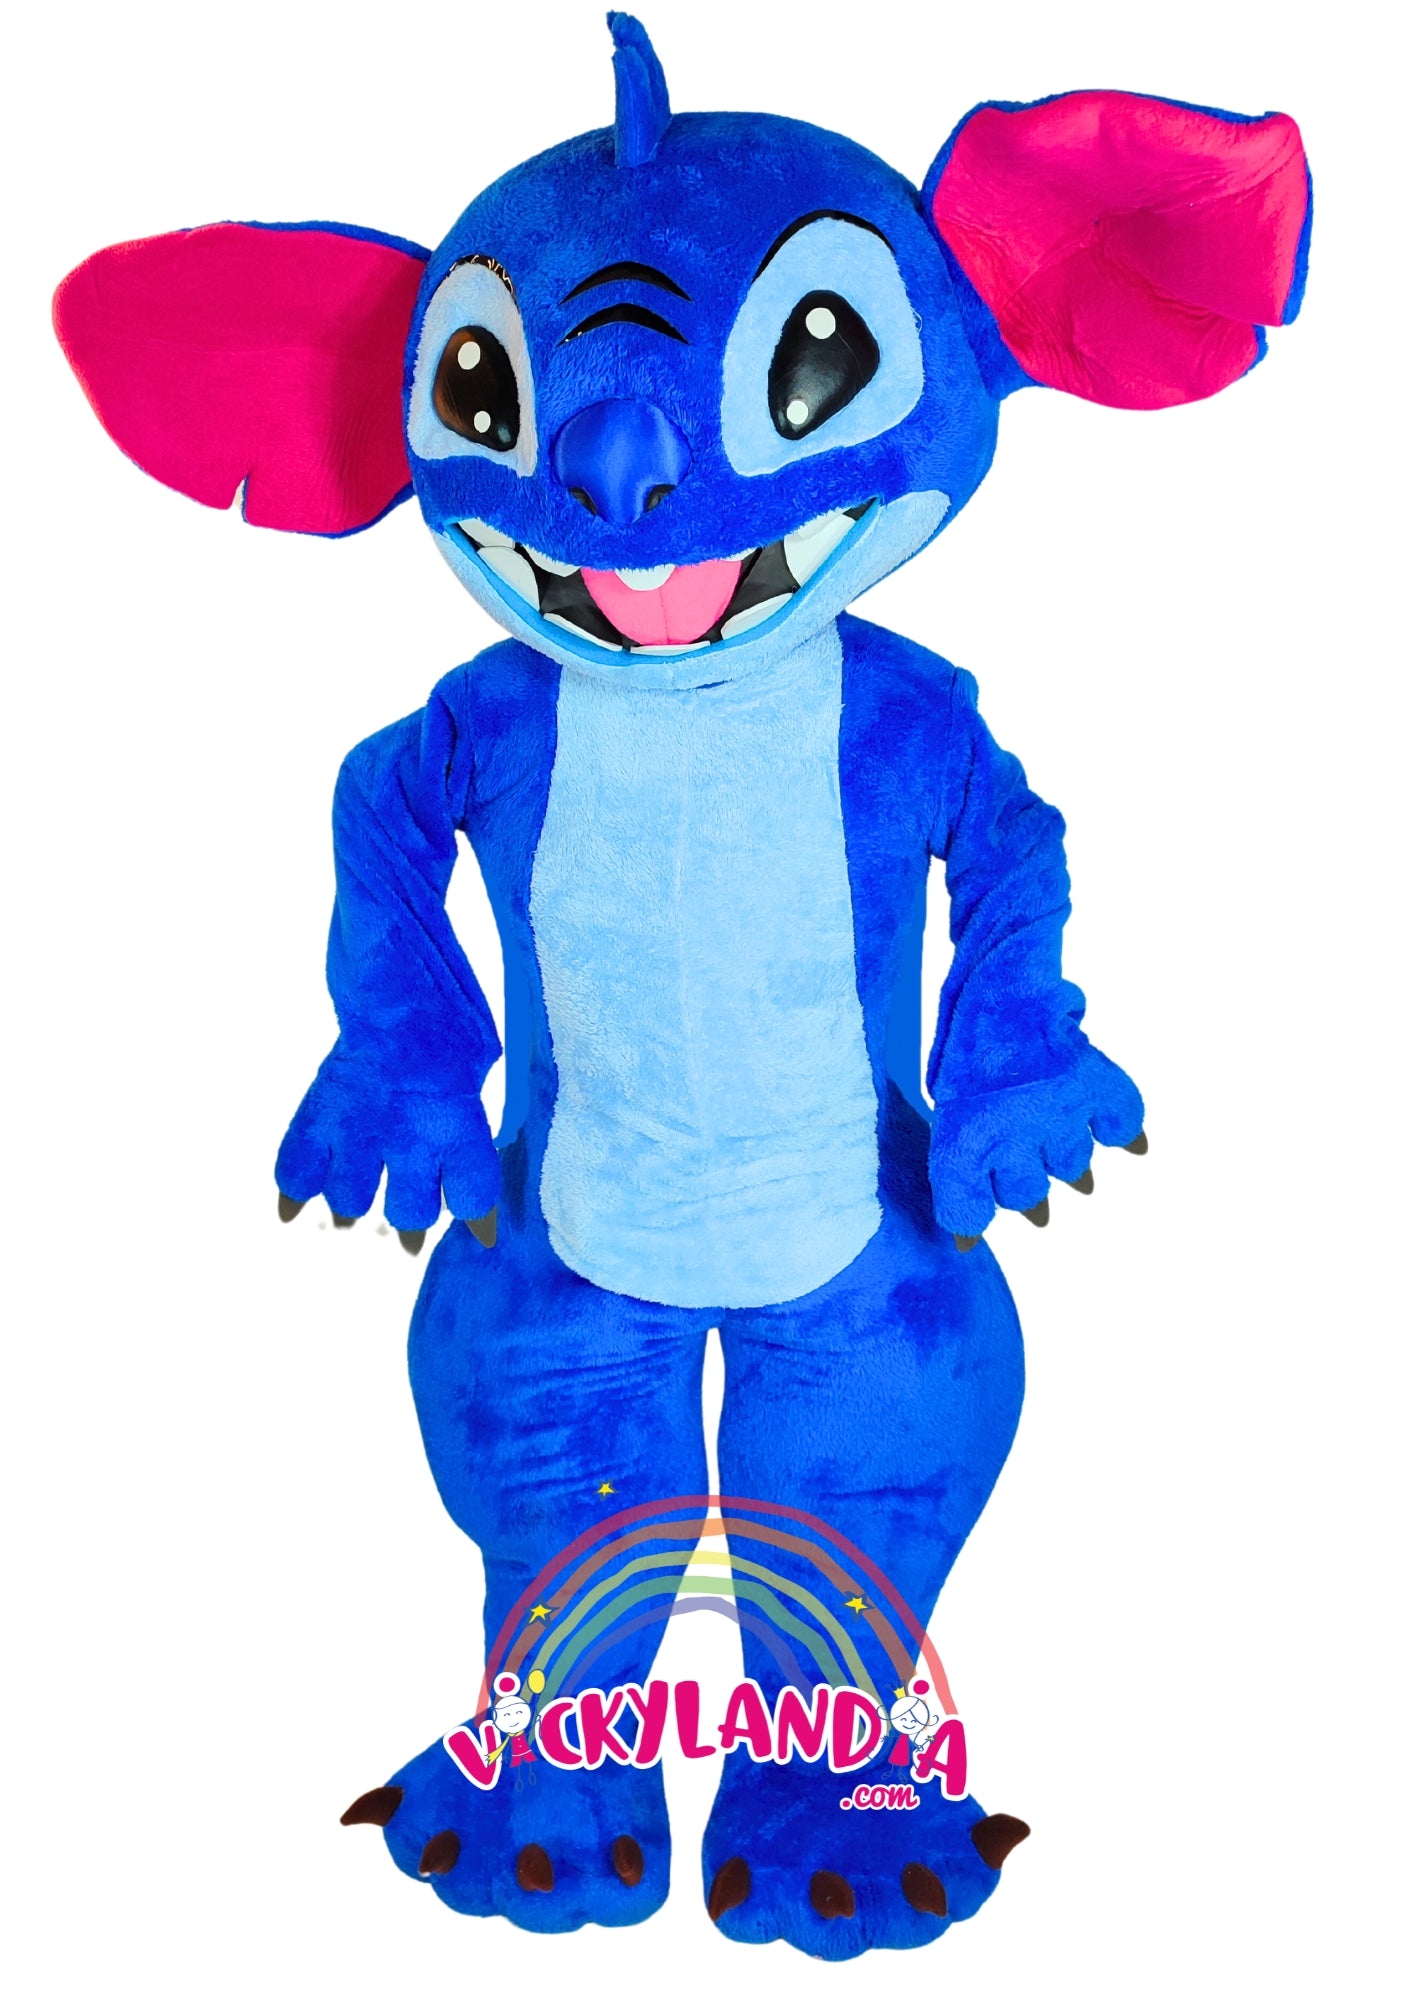 Descubre la magia de nuestro muñeco publicitario de Extraterrestre Peludo Azul en Vickylandia. Son disfraces cabezones perfectos para fiestas infantiles, shows, cumpleaños, estrategias publicitarias, espectáculos, cabalgatas y cualquier tipo de evento